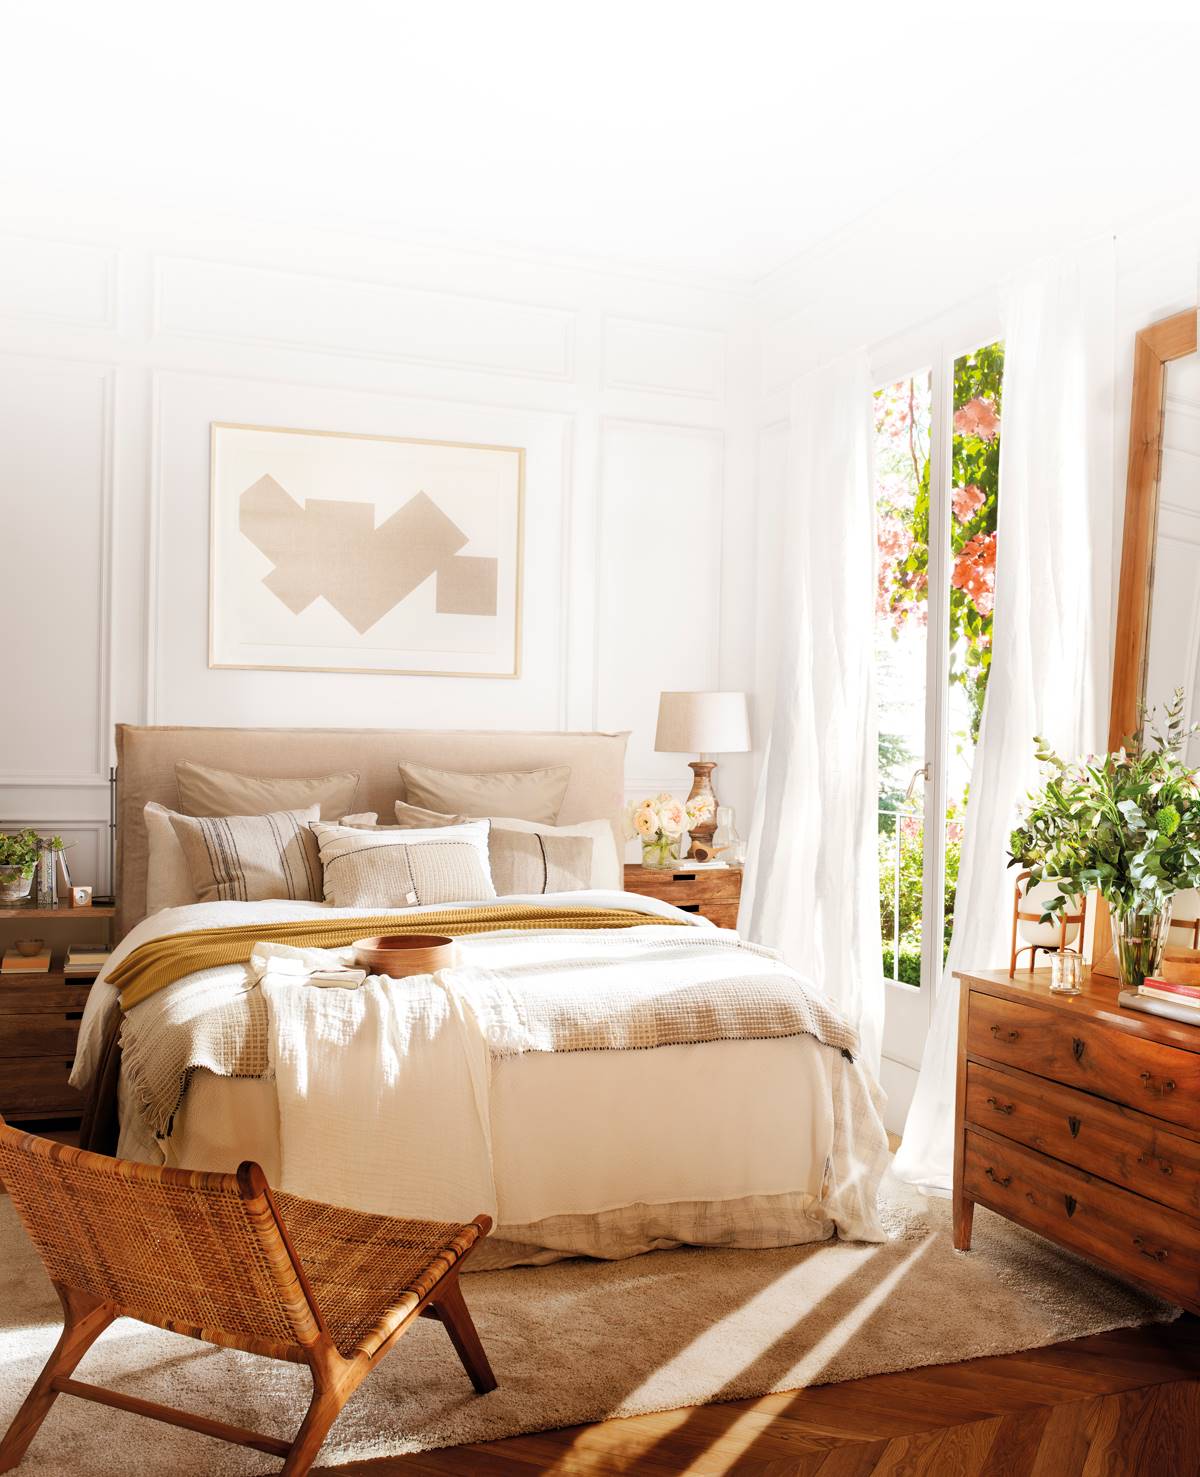 Dormitorio de estilo natural con butaca trenzada a pie de cama 00501570